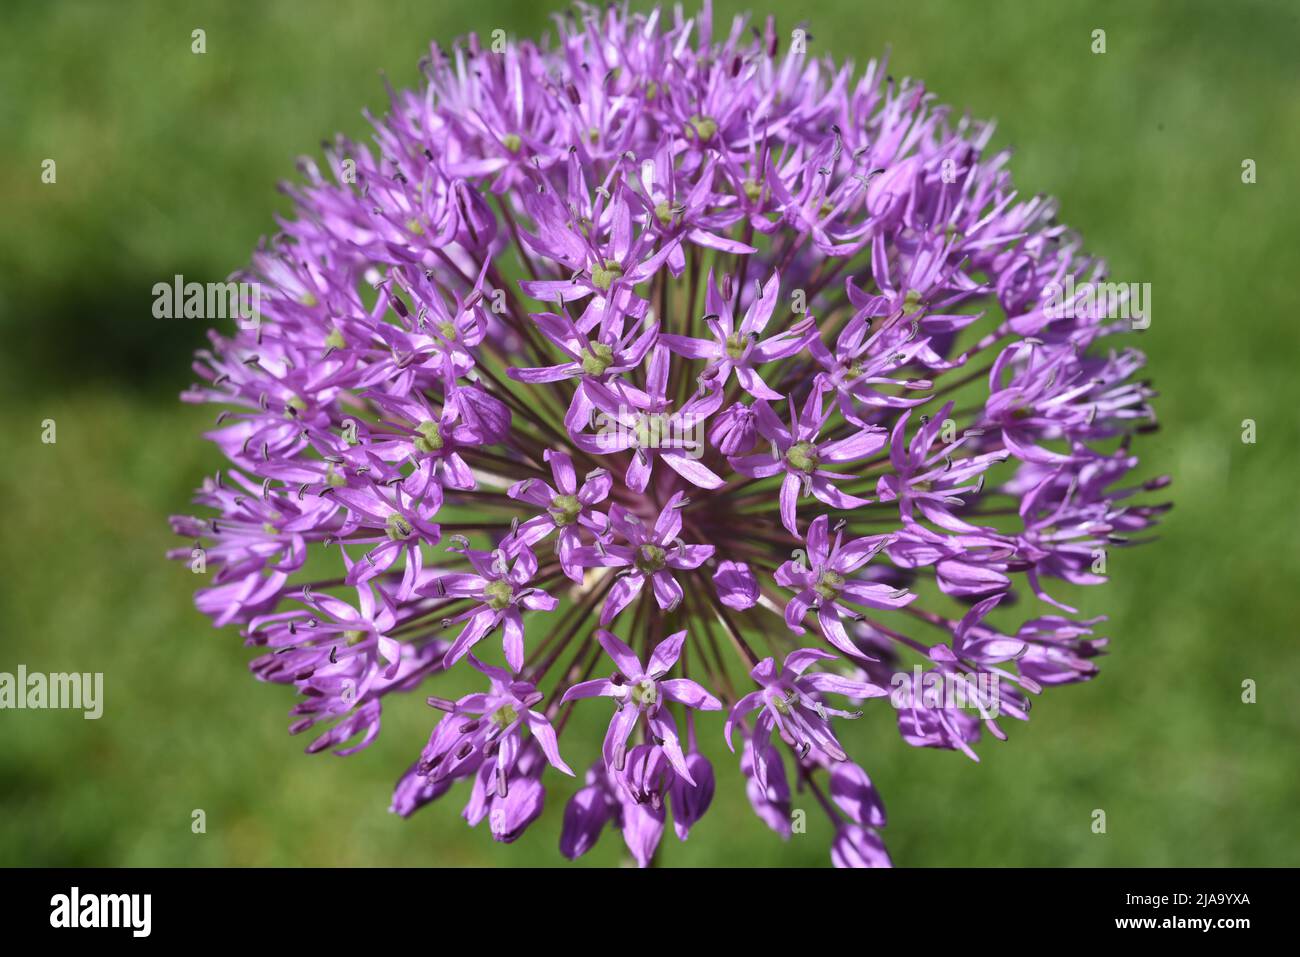 Zierlauch, Riesenlauch, Allium Giganteum ist eine wunderschoene Zierpflanze im Garten und hat lila Blueten. Giglio ornamentali, giglio gigante, Allium Gigant Foto Stock